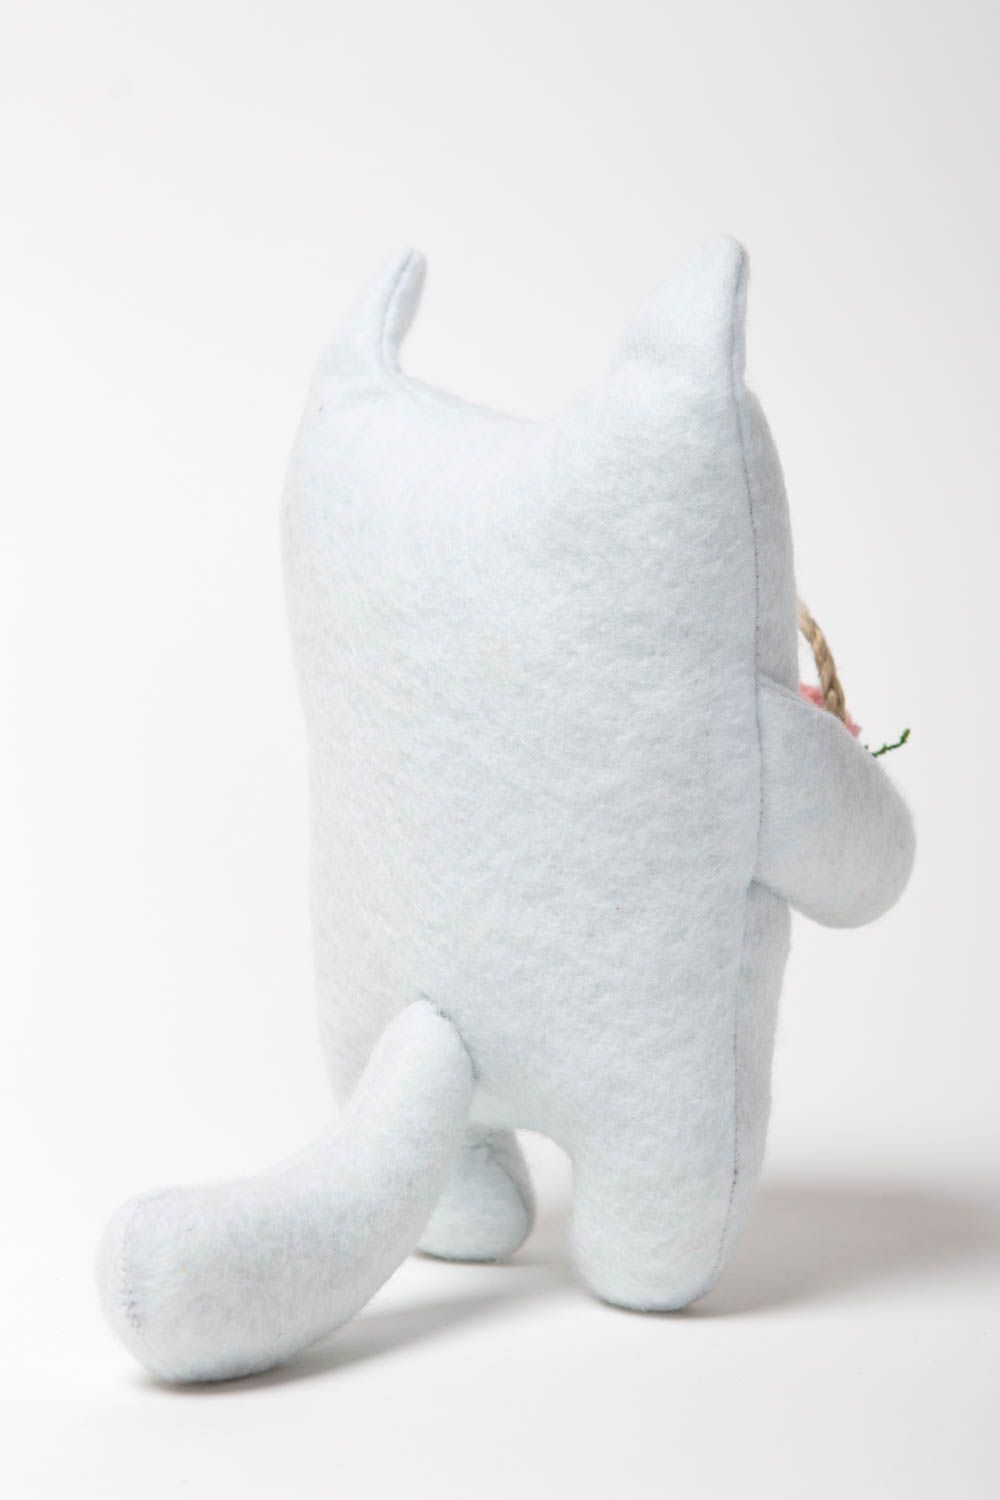 Peluche chat blanc faite main Jouet en tissu petit Cadeau original mignon photo 4